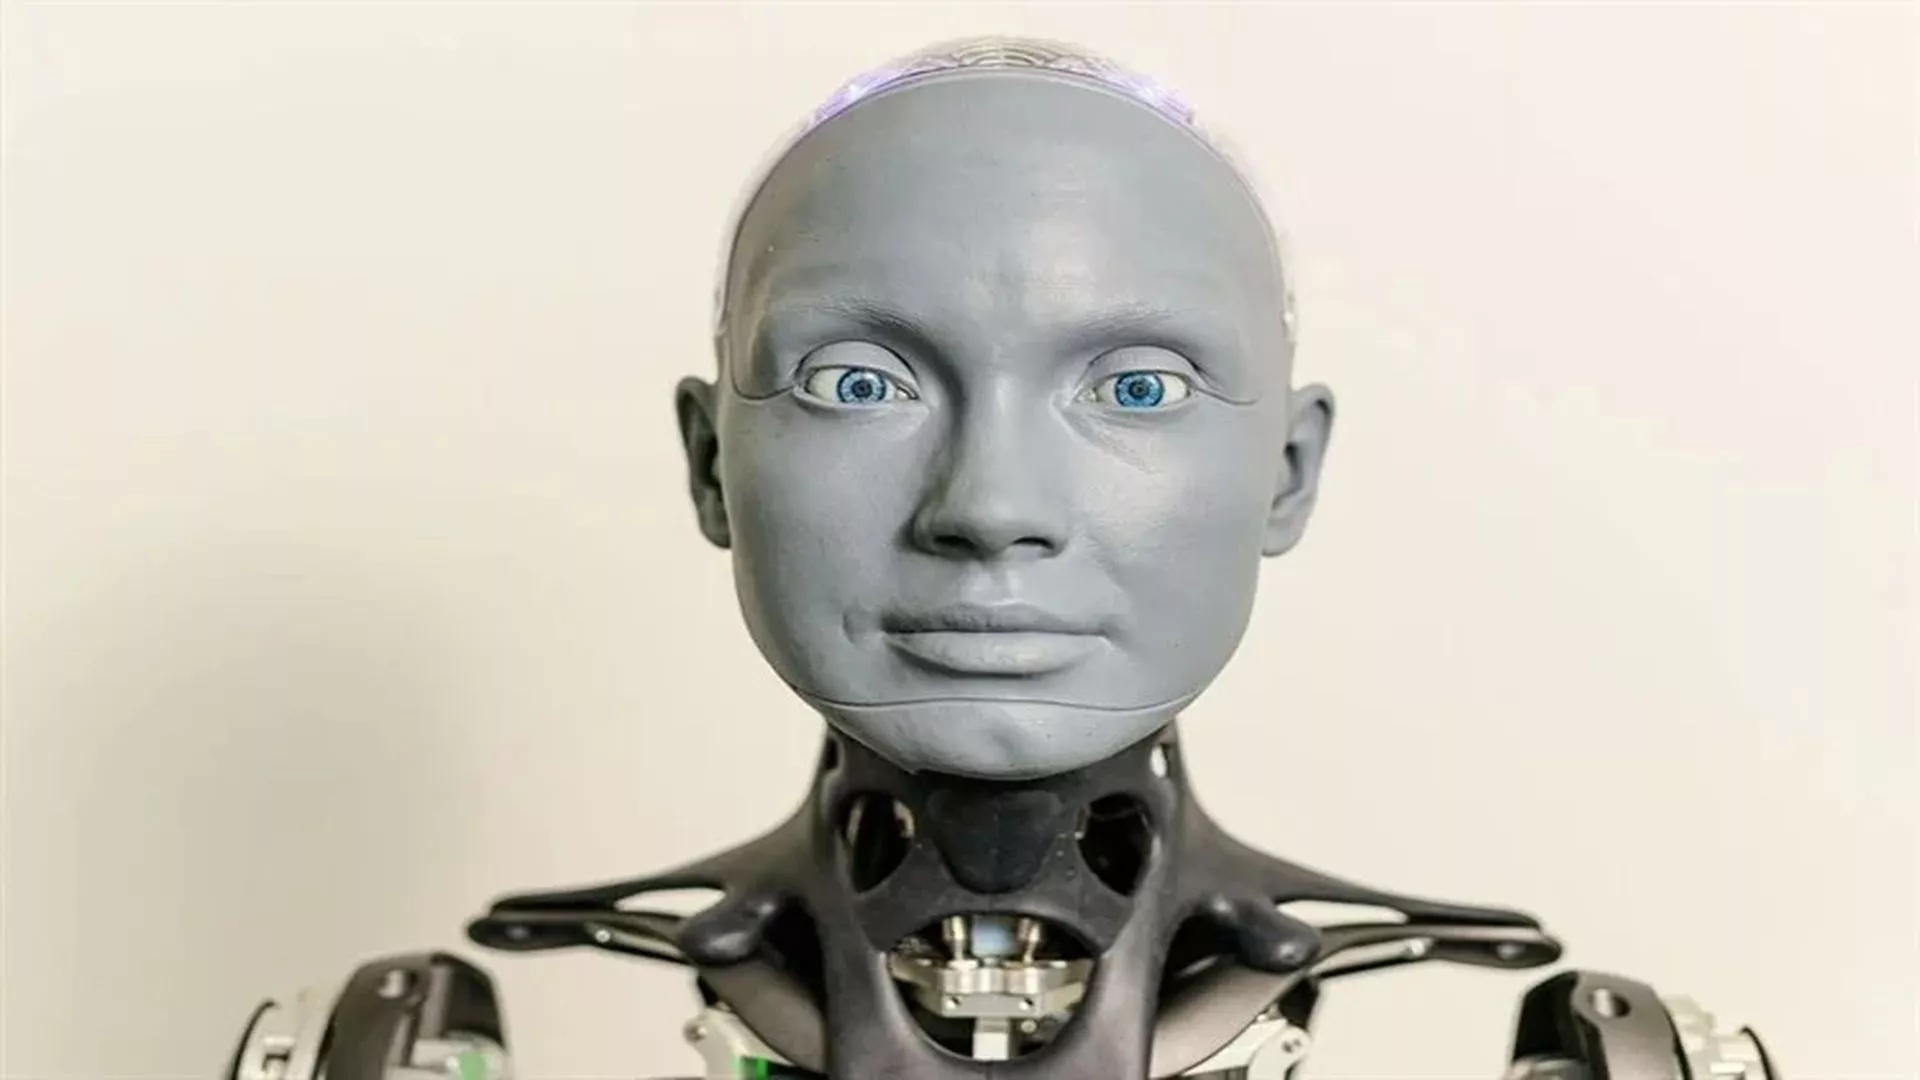 El robot humanoide Ameca es adquirido por un centro de investigacion escoces